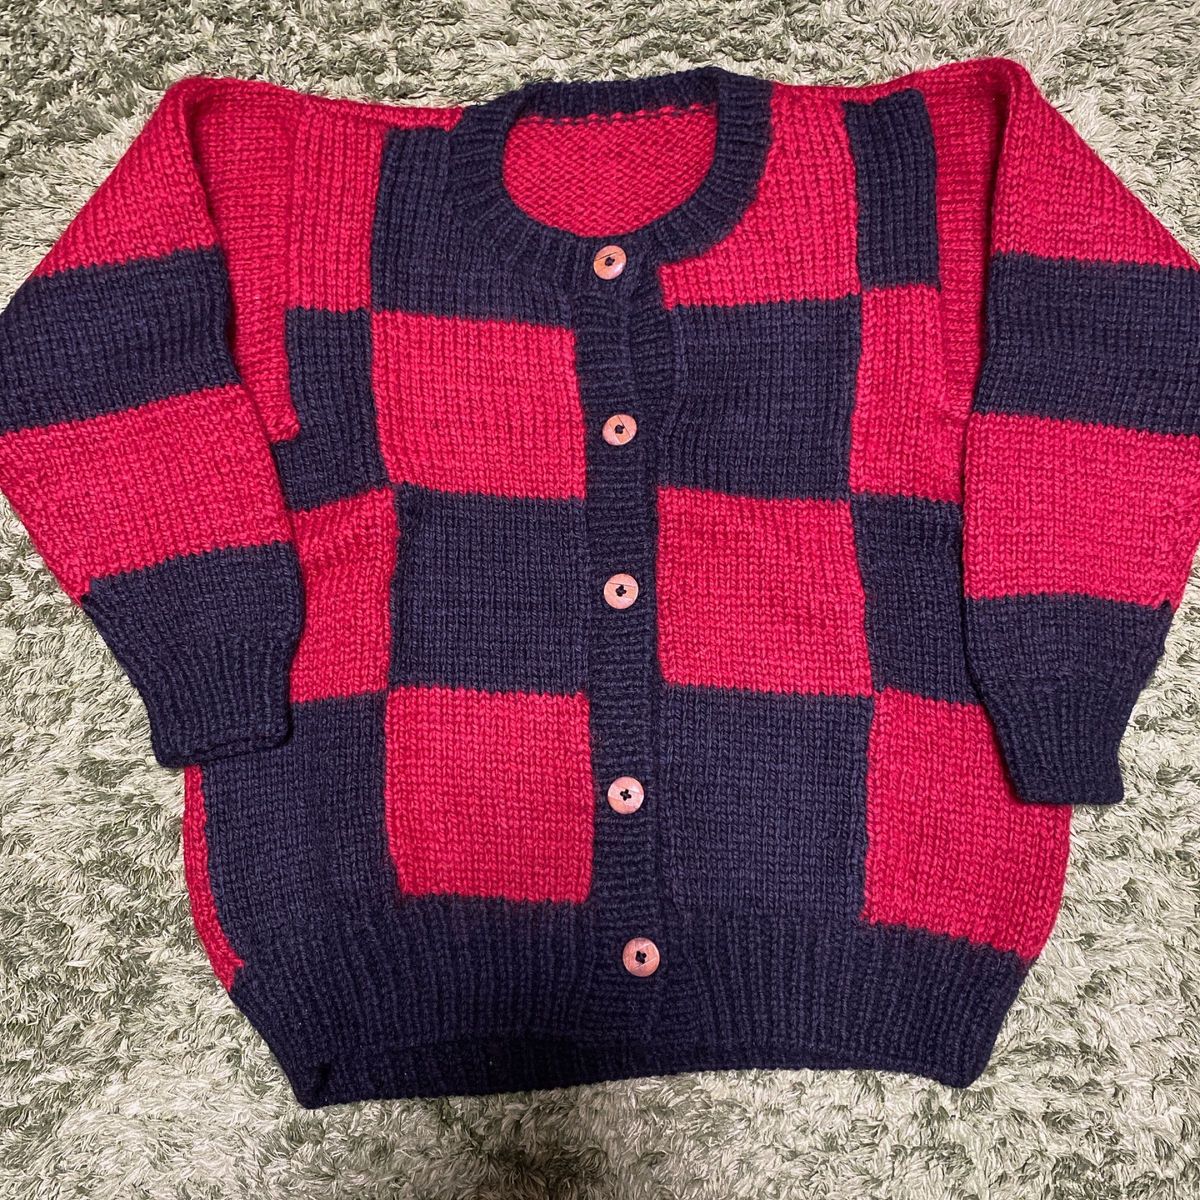 手編み 厚手 ニット セーター カーディガン ウール 毛 ボタン 赤 黒 ブロック柄 柄物 暖かい レトロ